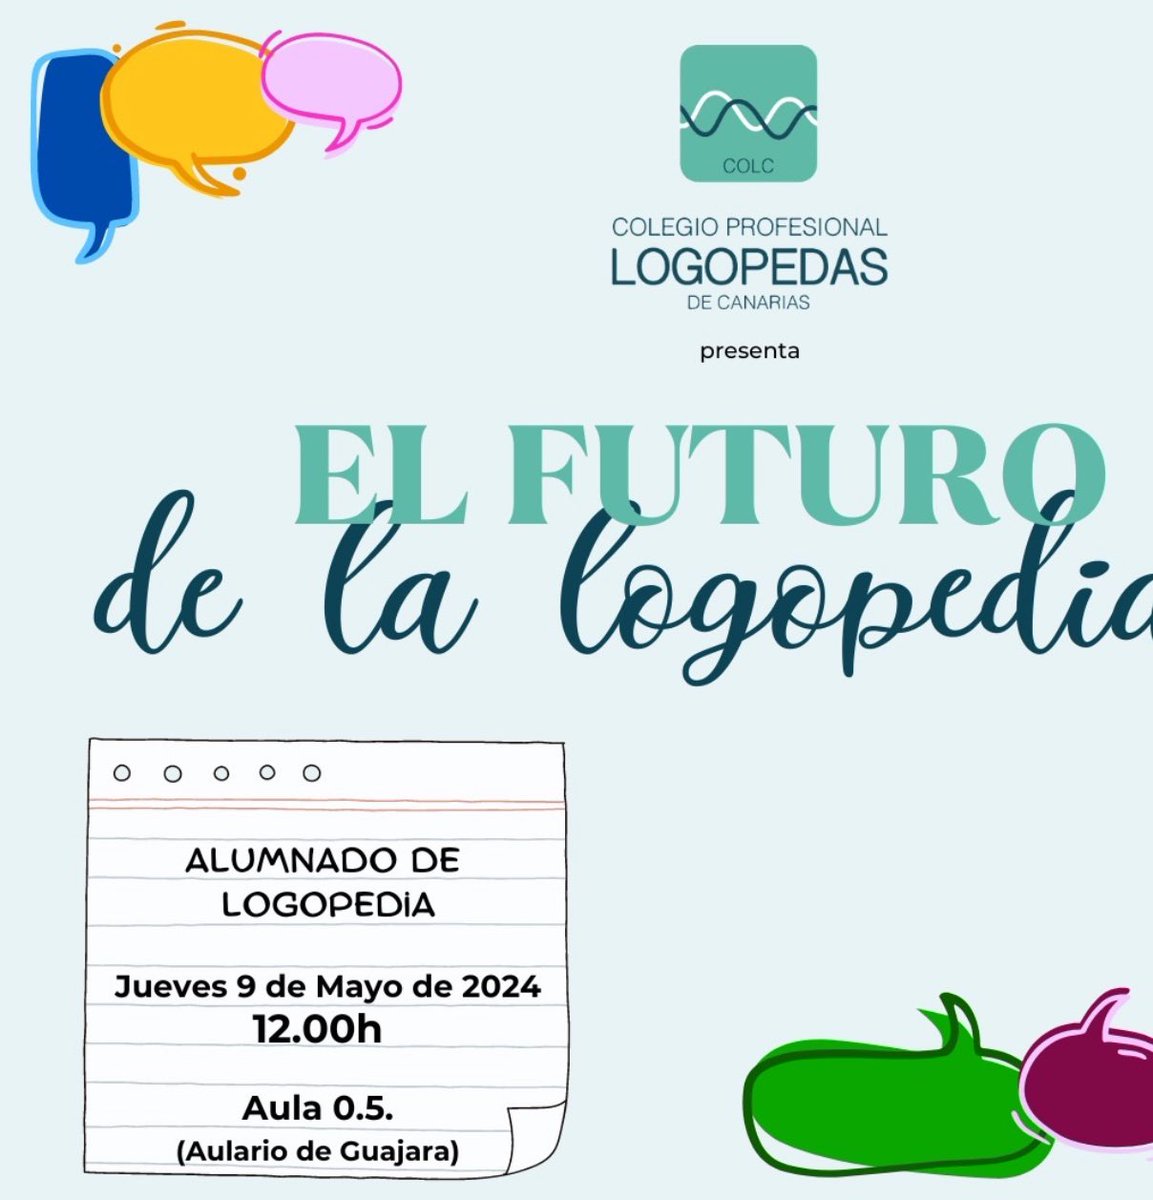 🗣️Si eres estudiante del Grado de Logopedia en la @ULL, no te puedes perder hoy, jueves, esta charla del @LogopedasCOLC sobre el futuro de nuestra especialidad 🚀

⏰12:00 h
📍Aula 05 Guajara

#COLC #Logopedia #ULL #ProfesionalesSanitarios